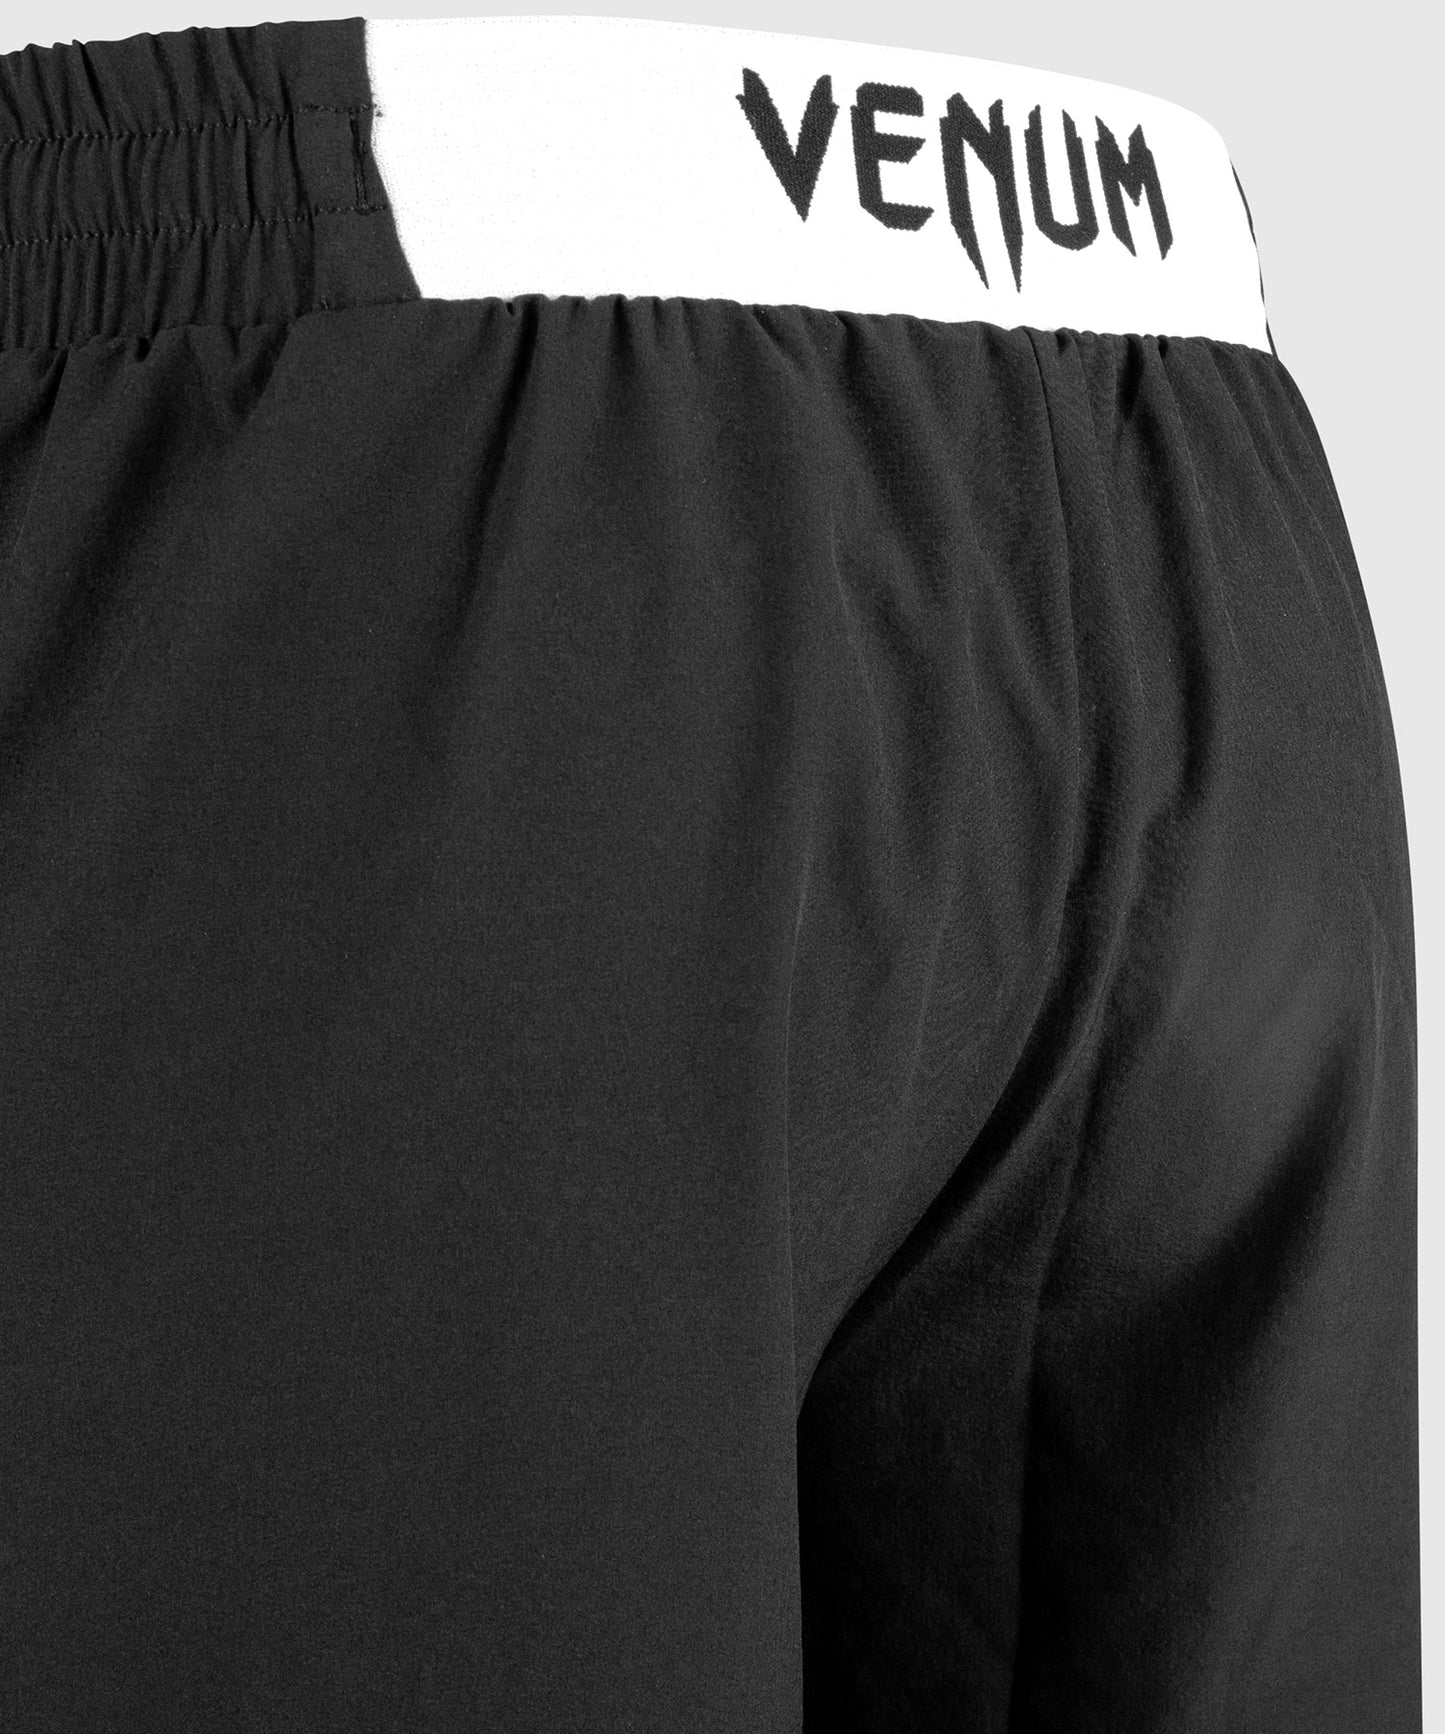 Pantaloncini da Allenamento Classic Venum - Nero/Bianco